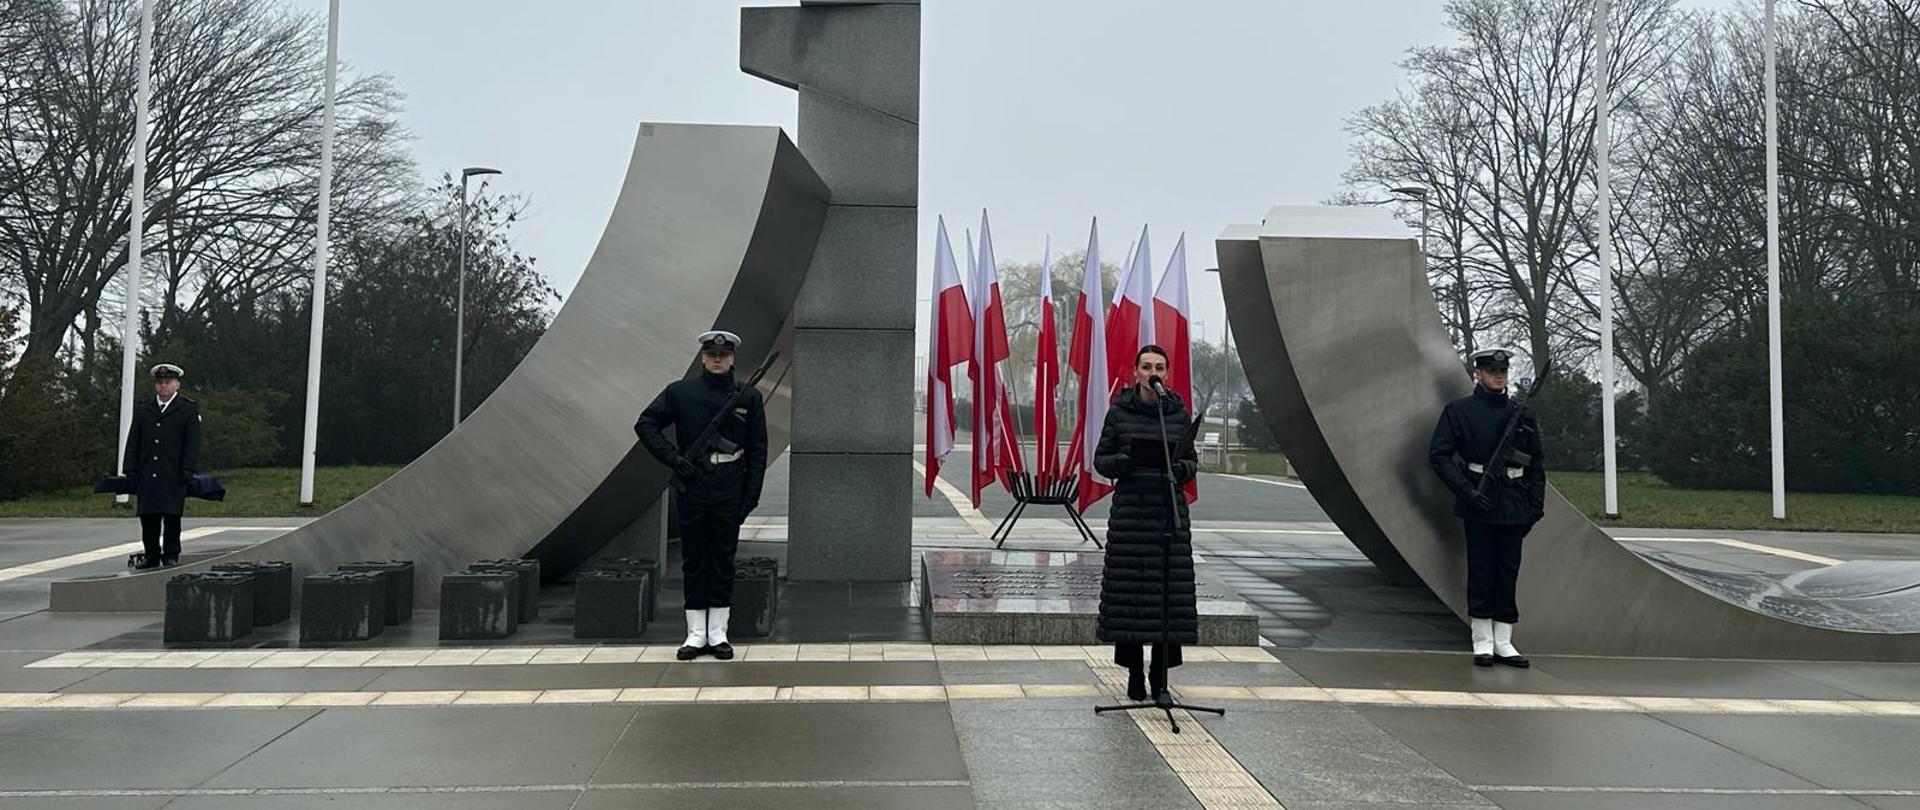 pomnik, przed nim kobieta (wojewoda) wygłaszająca przemówienie, obok dwóch marynarzy i flagi Polski